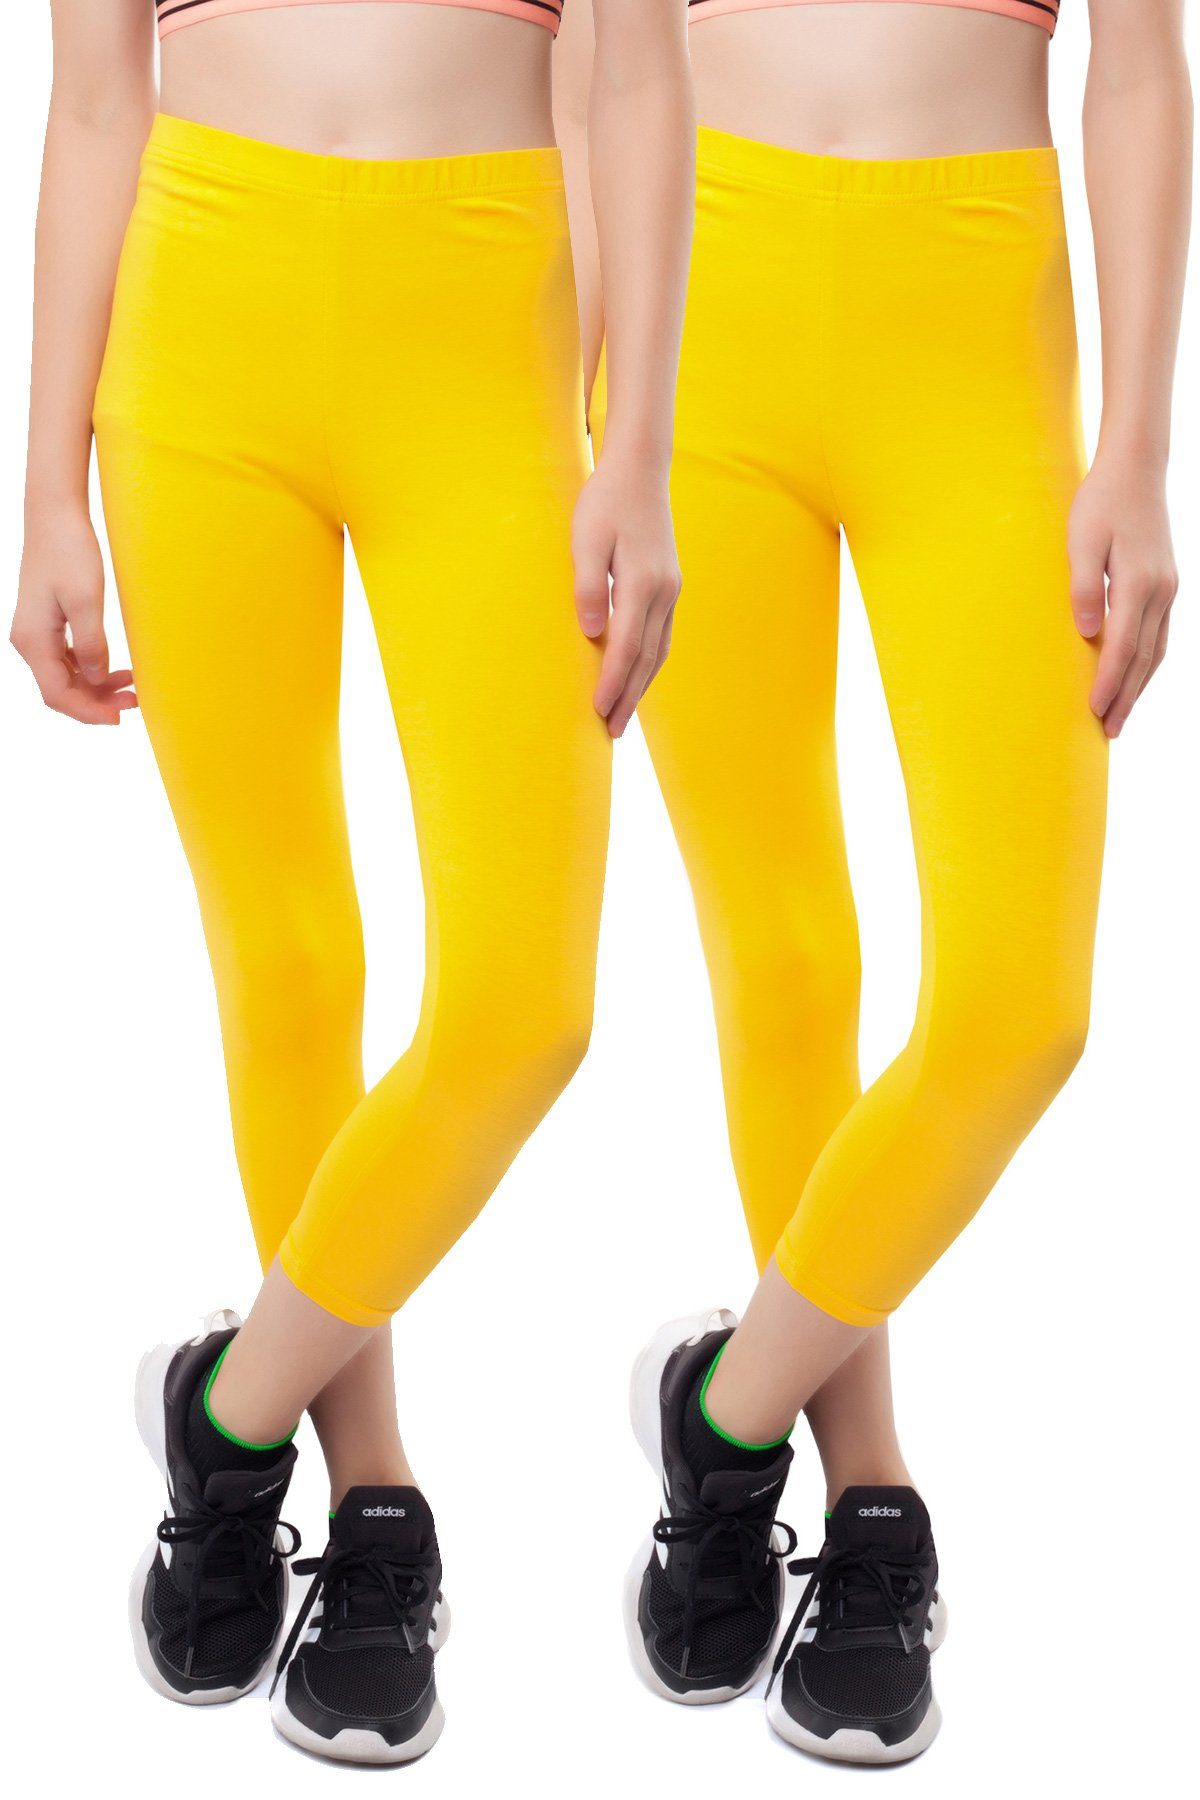 Bongual Leggings Kinder Gamaschen (2er-Pack) Unifarben gelb